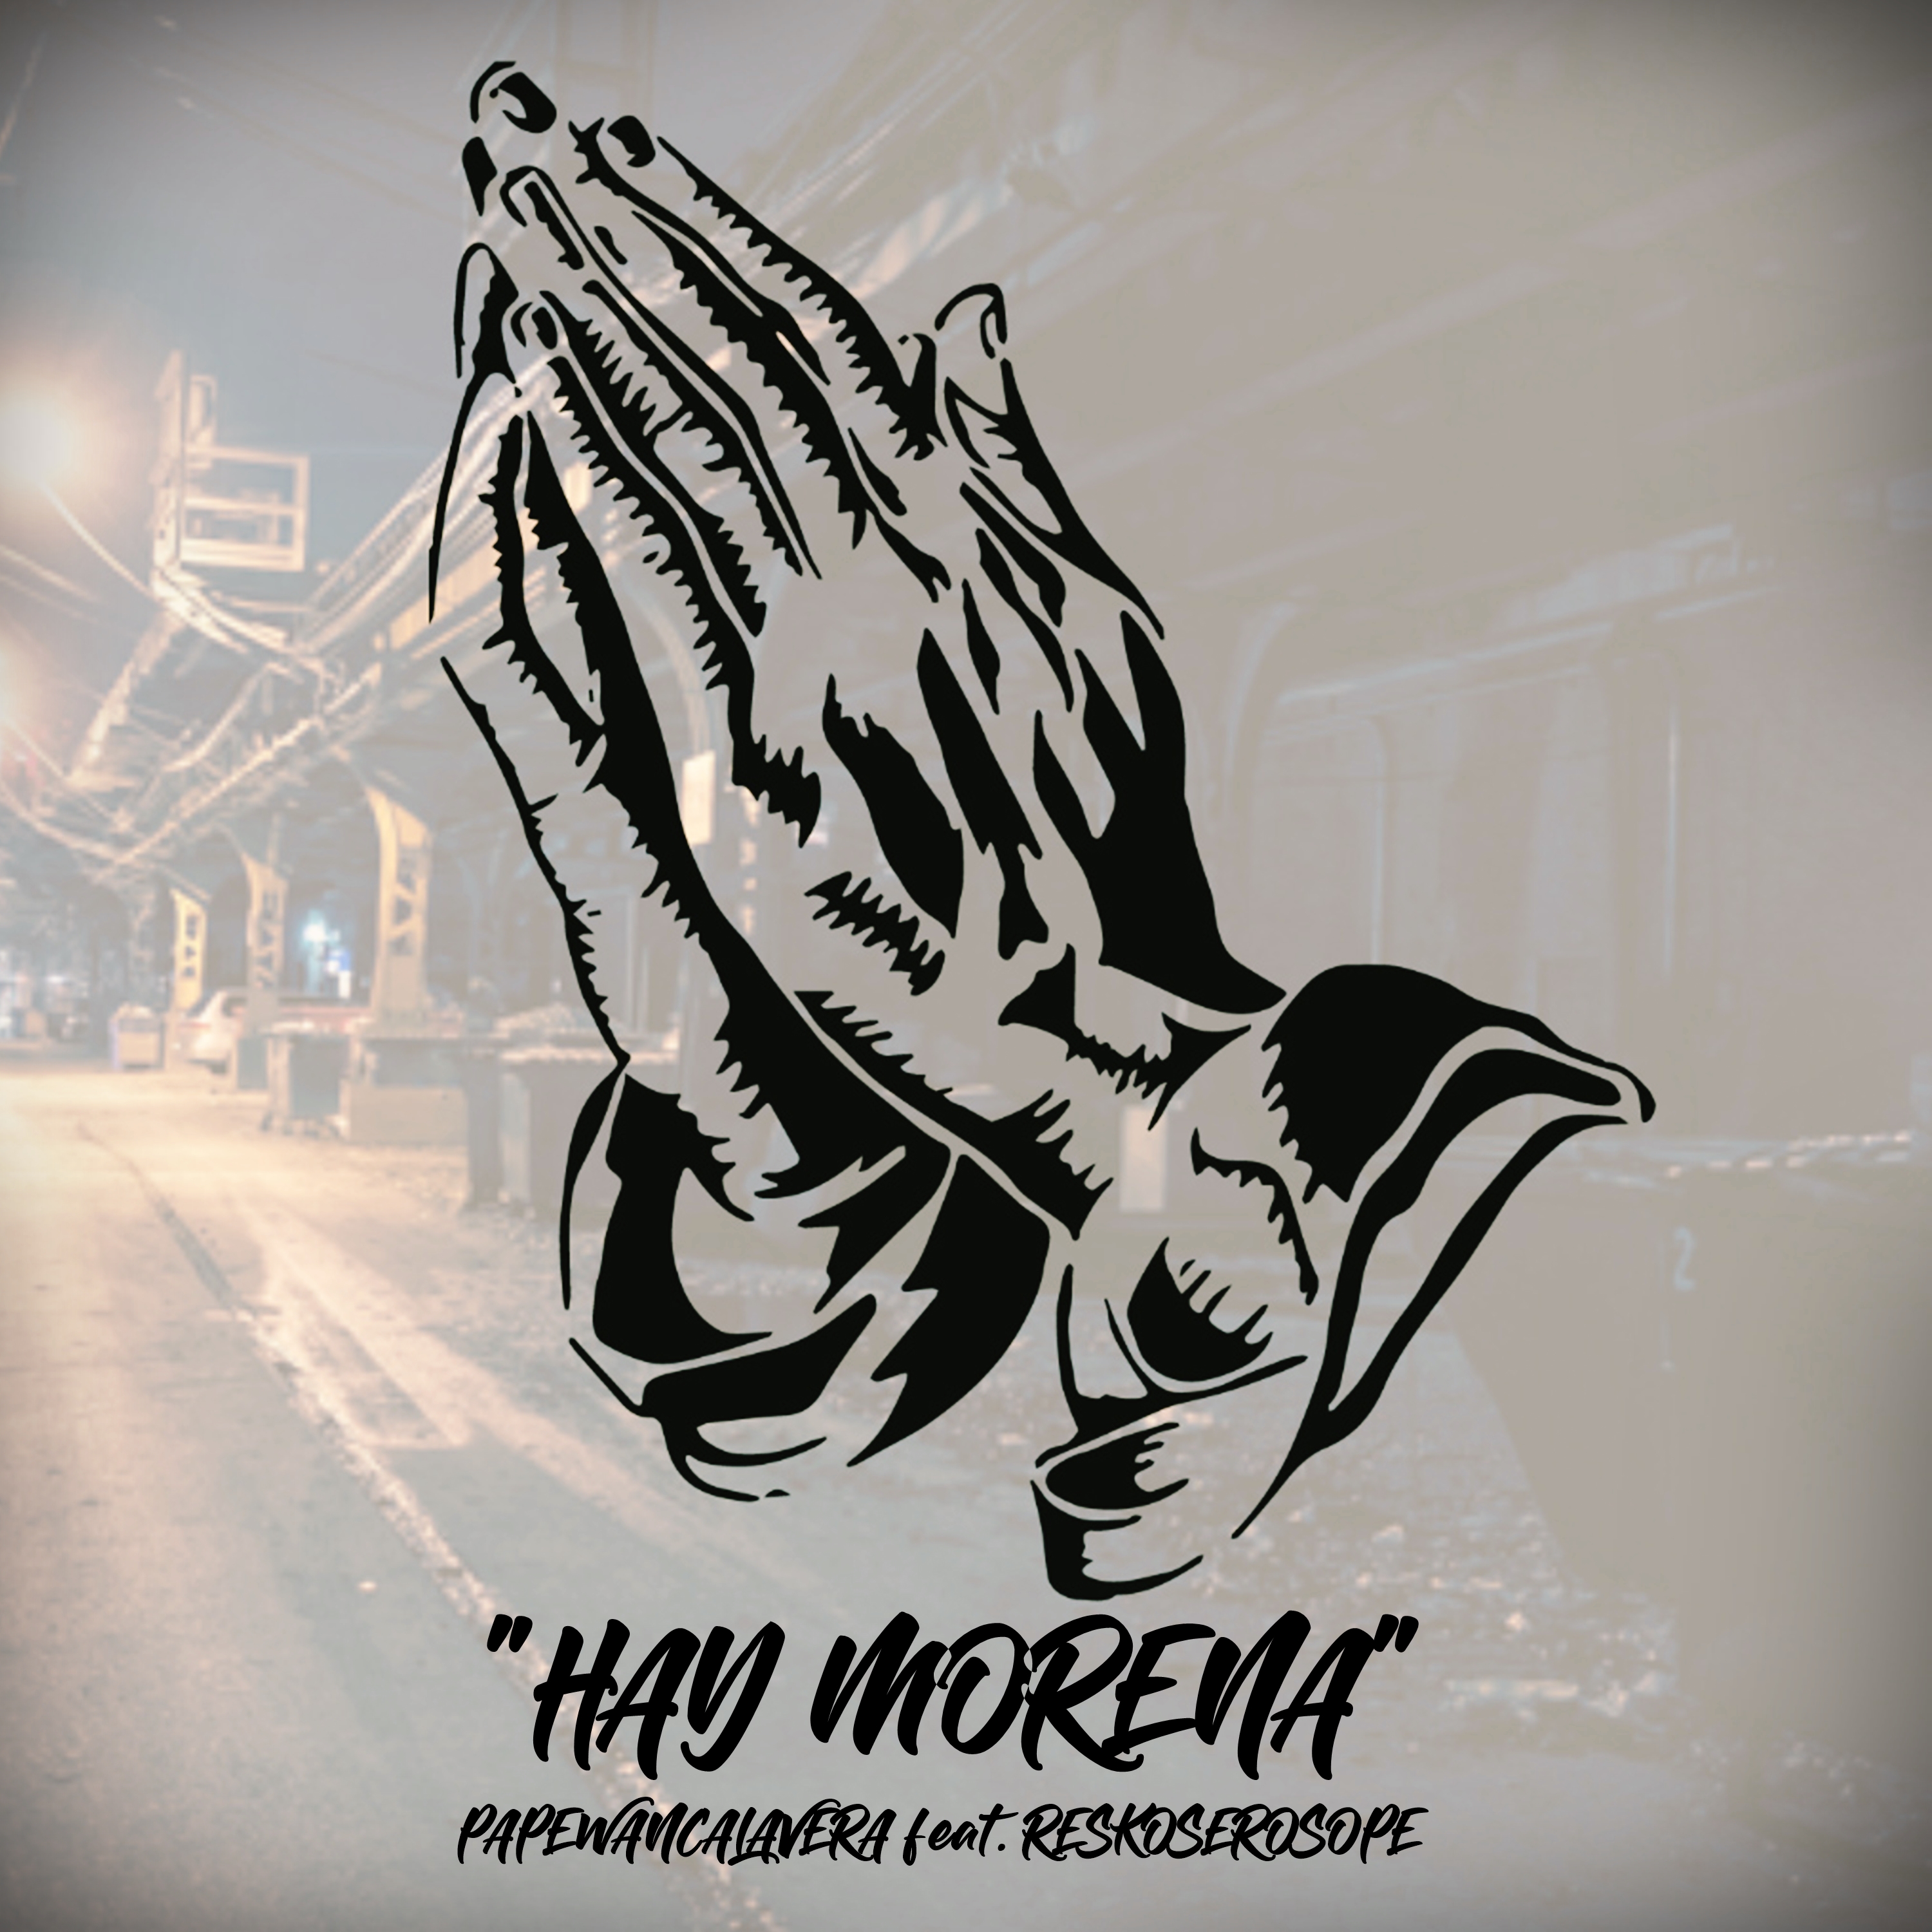 Hay Morena (feat. ReskoSeroSope)